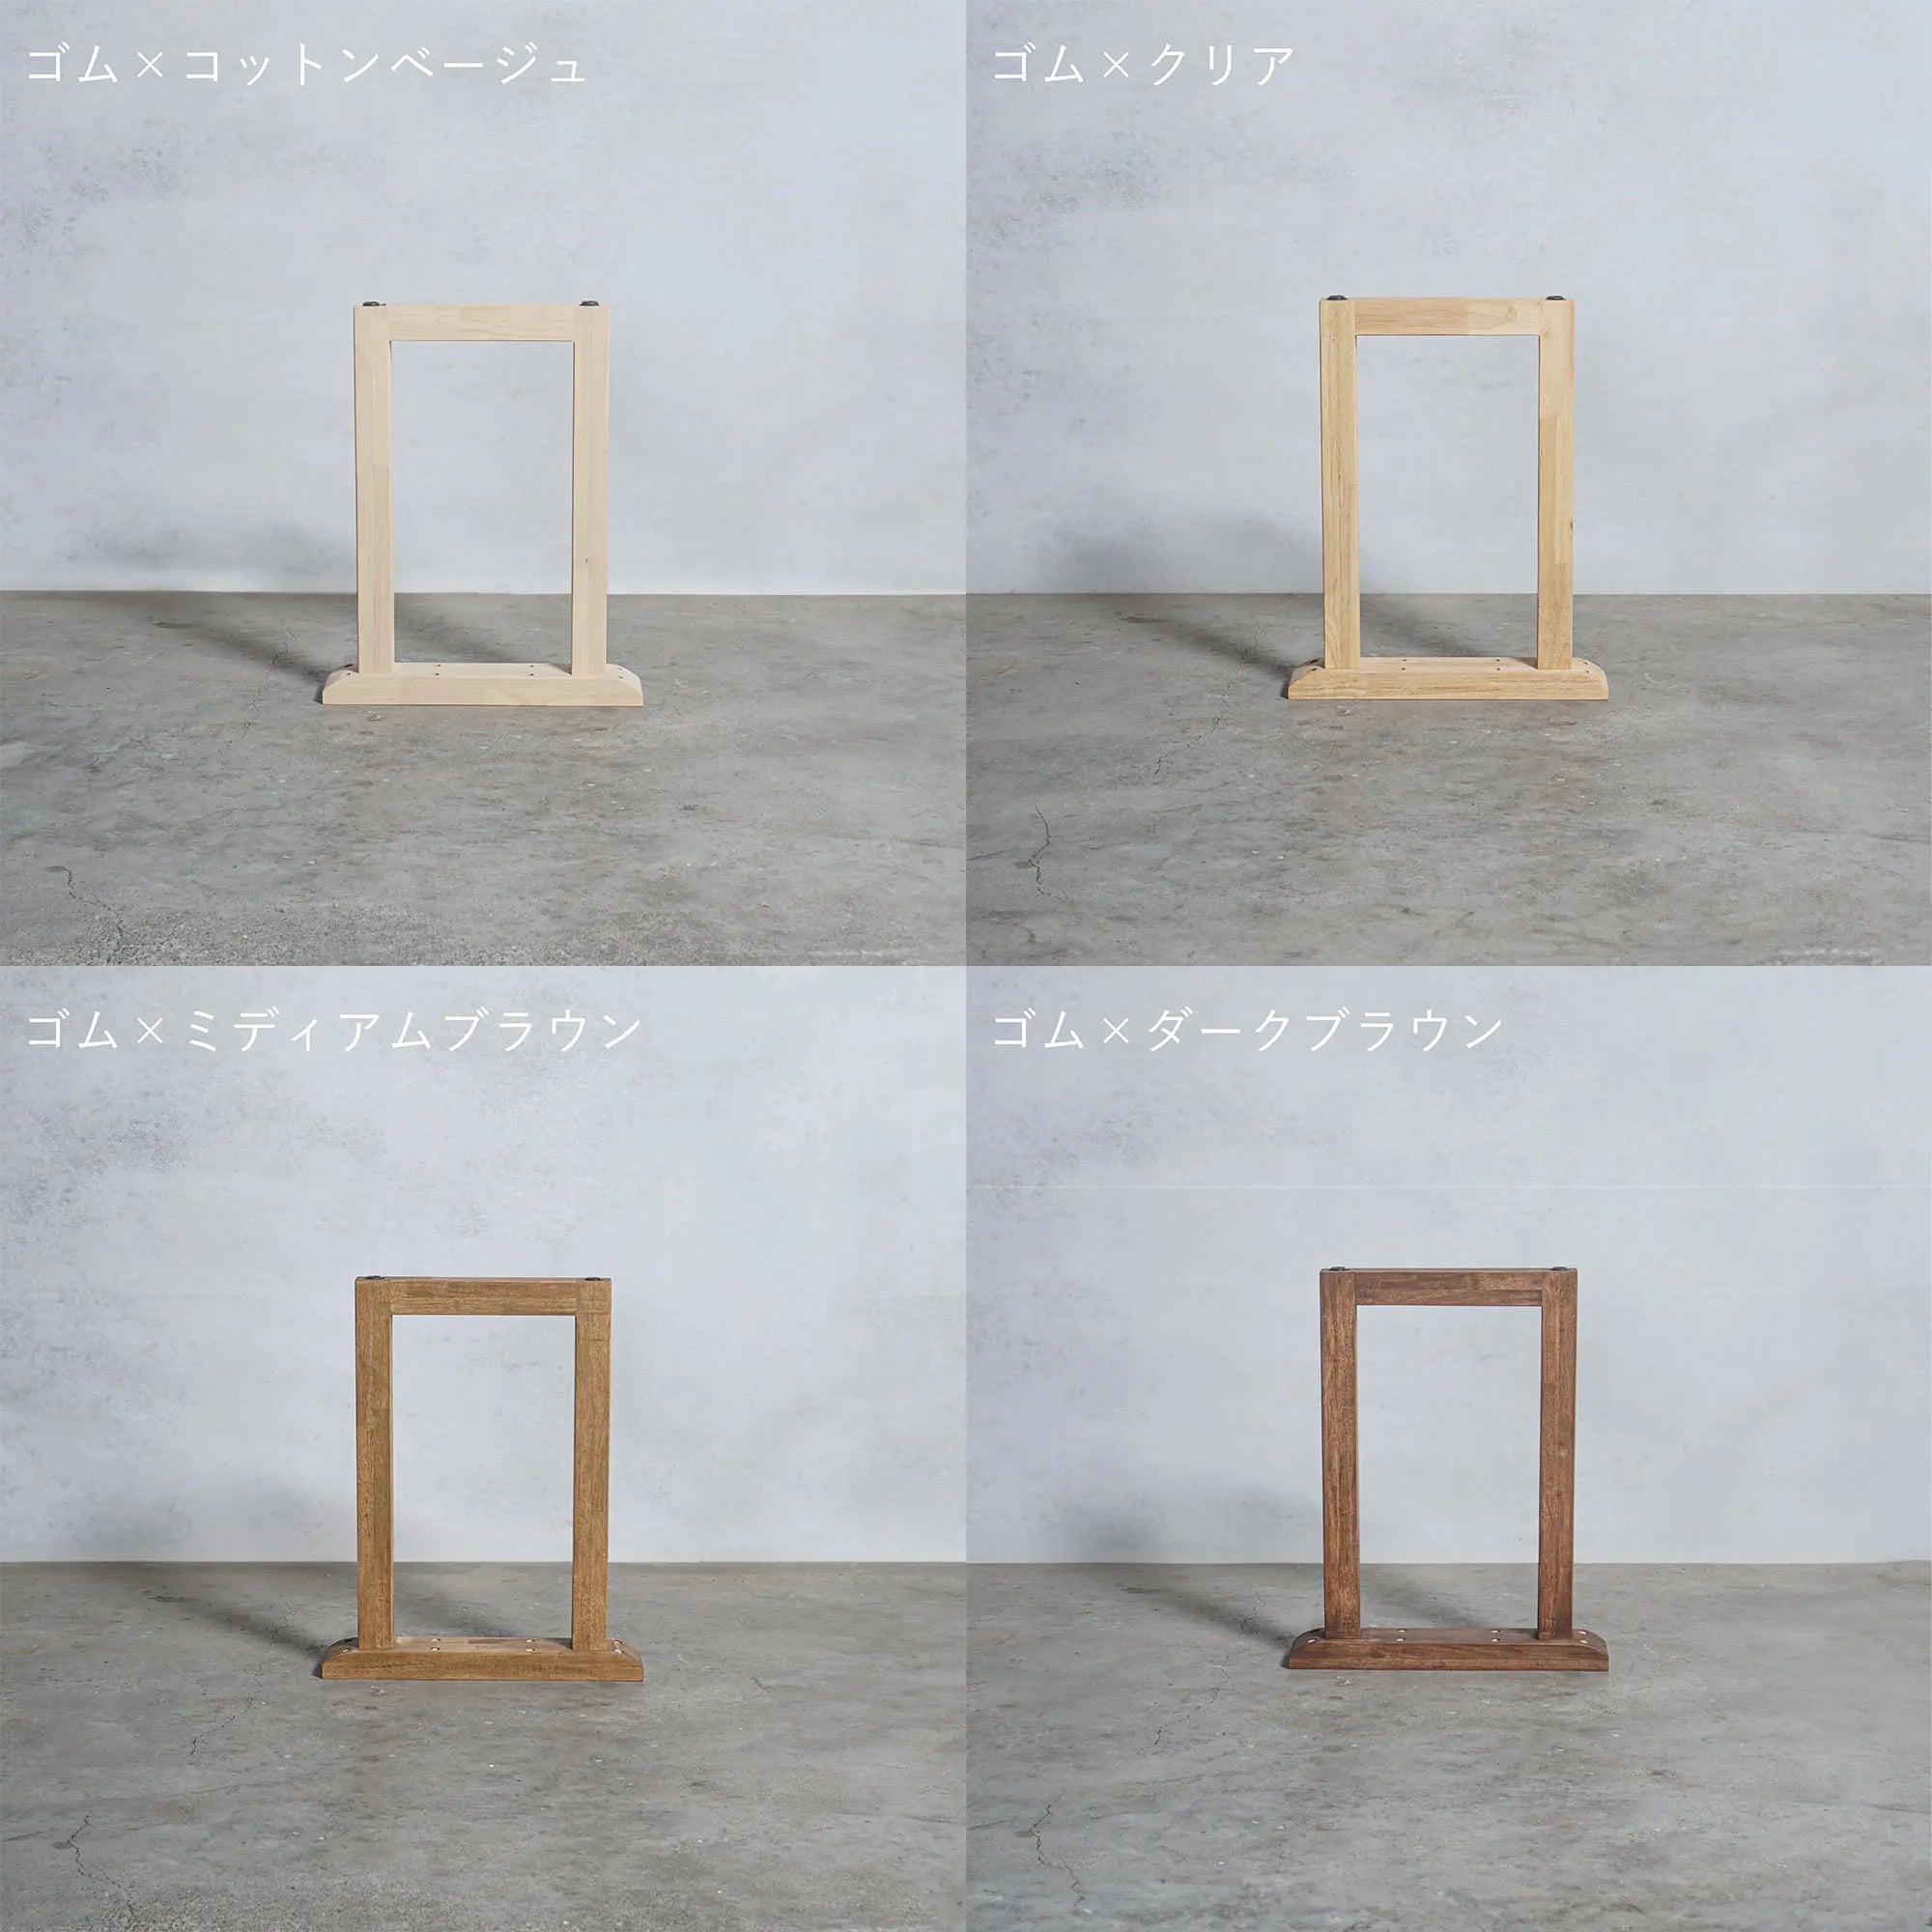 木製 テーブル脚 口型 オーダーメイド